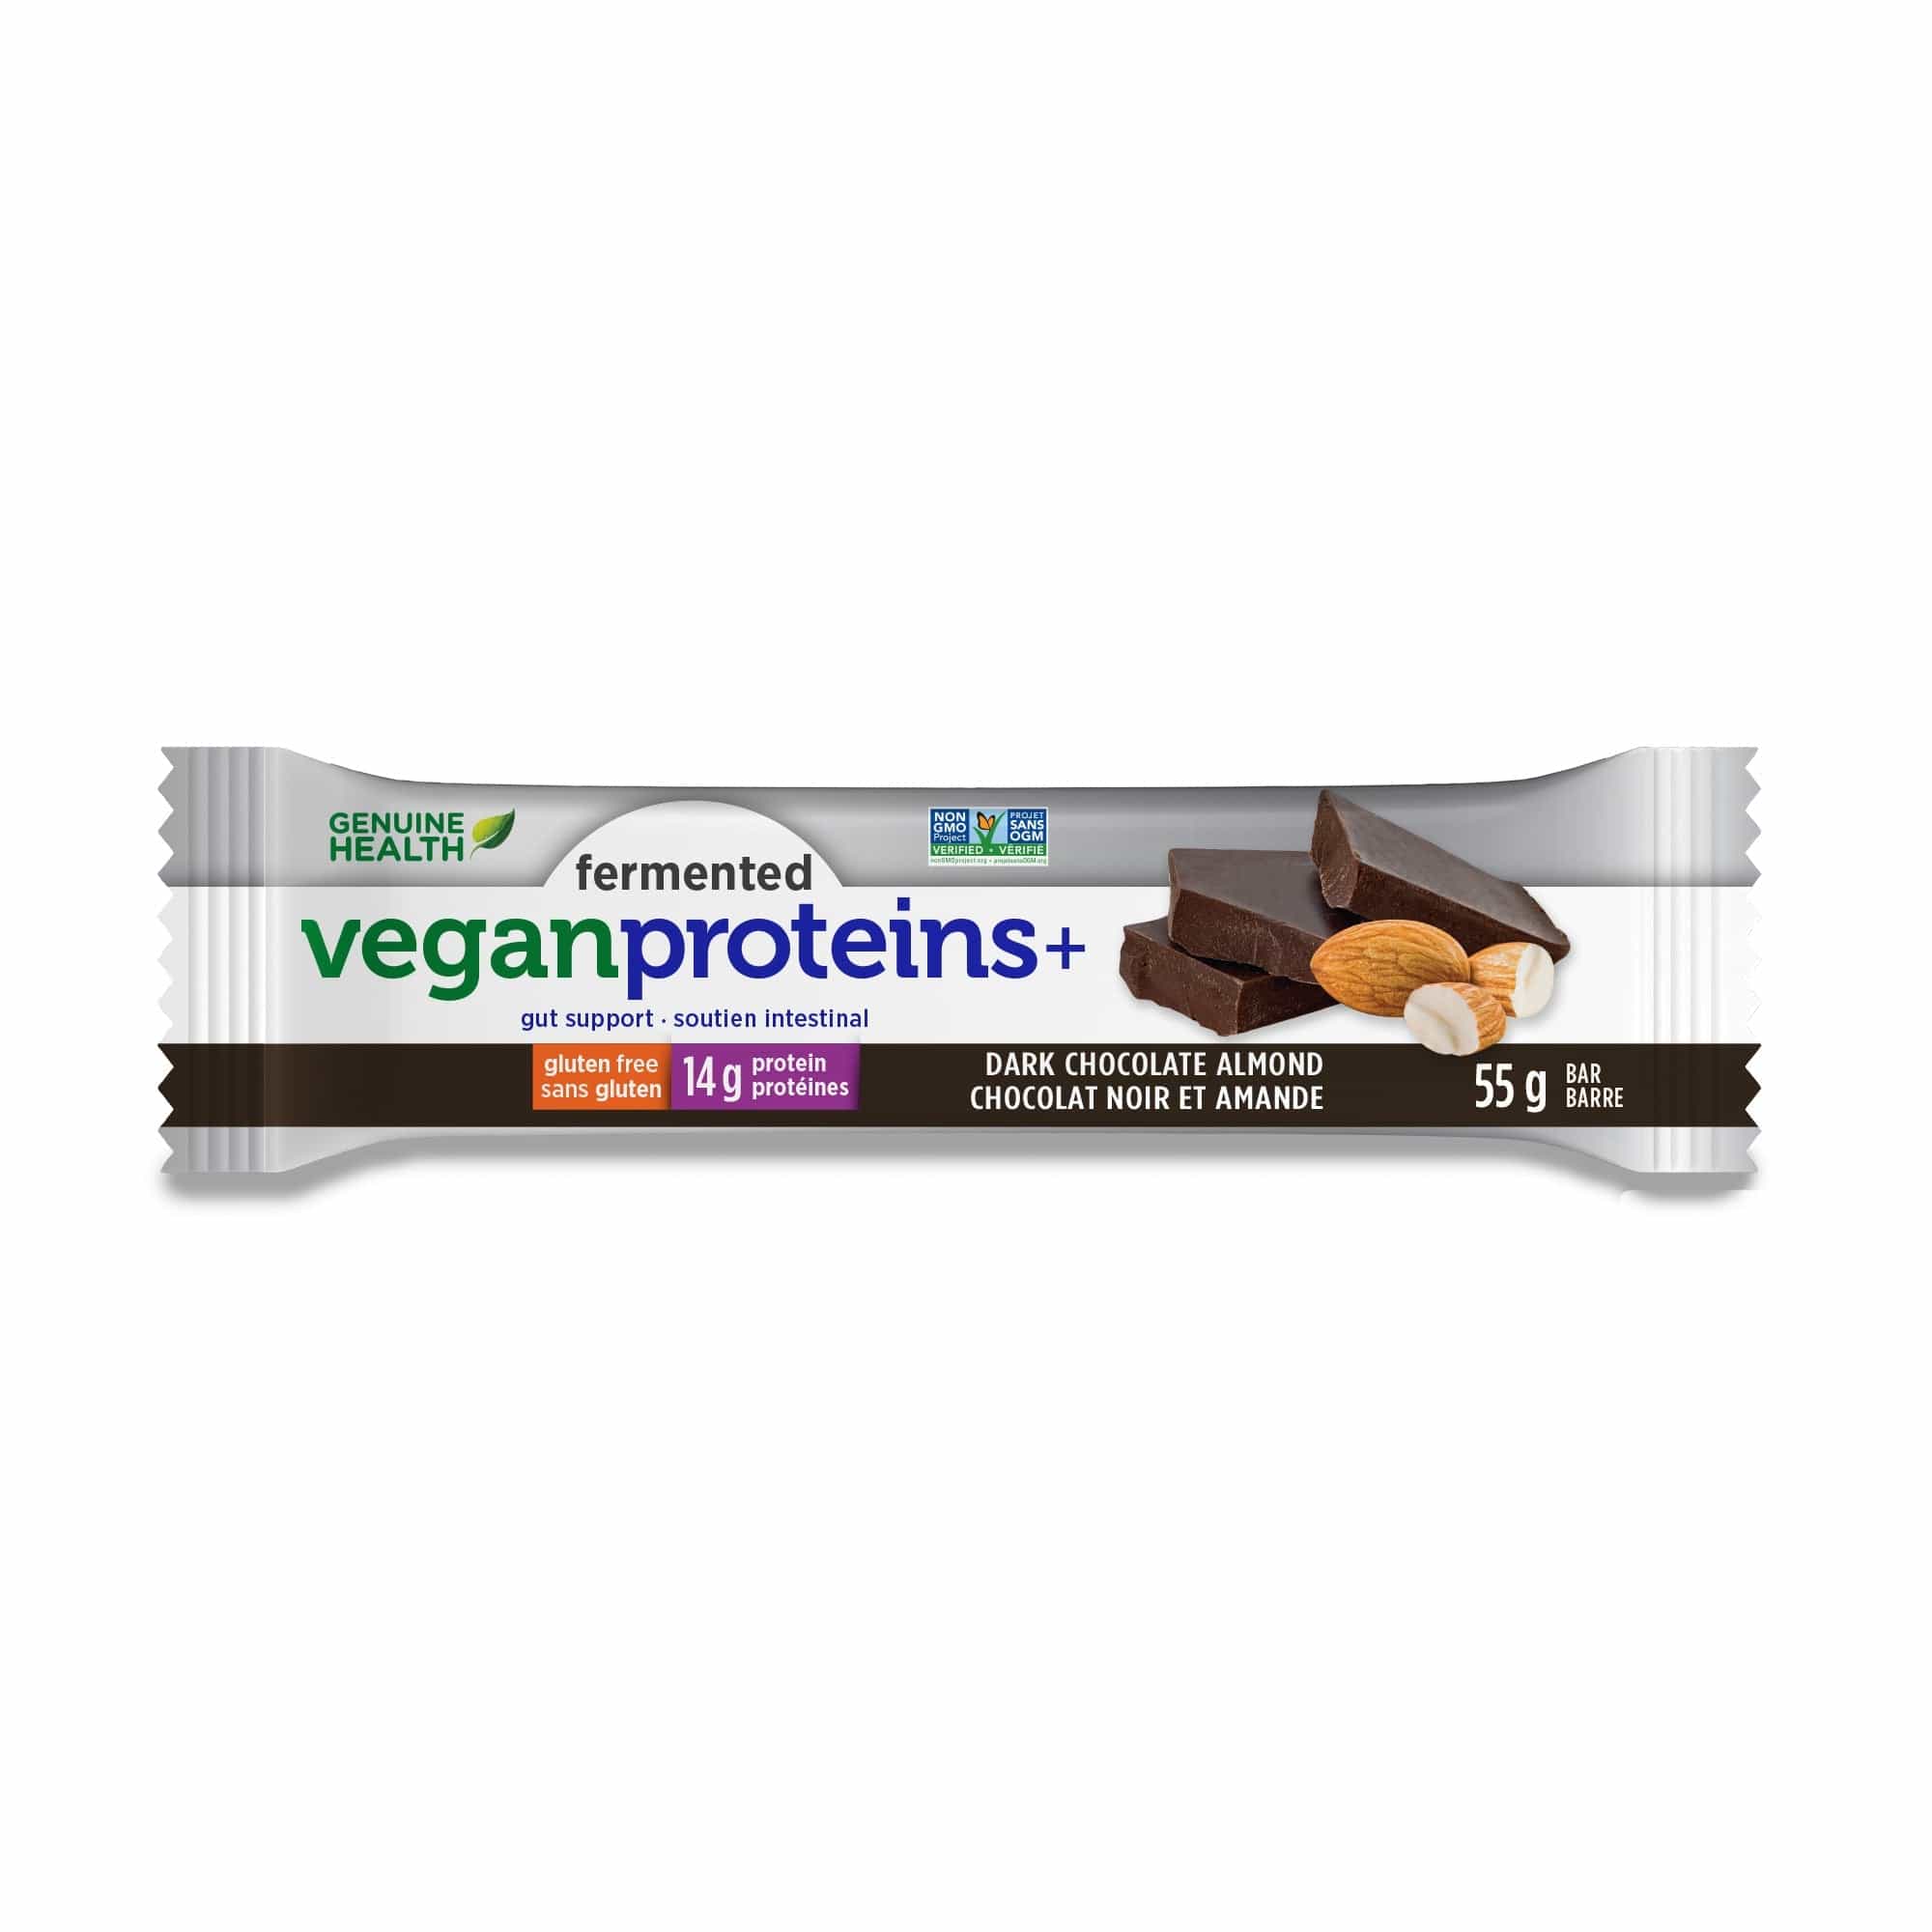 GENUINE HEALTH Suppléments Barres vegan proteins+ aux amandes et chocolat noir 12x55g